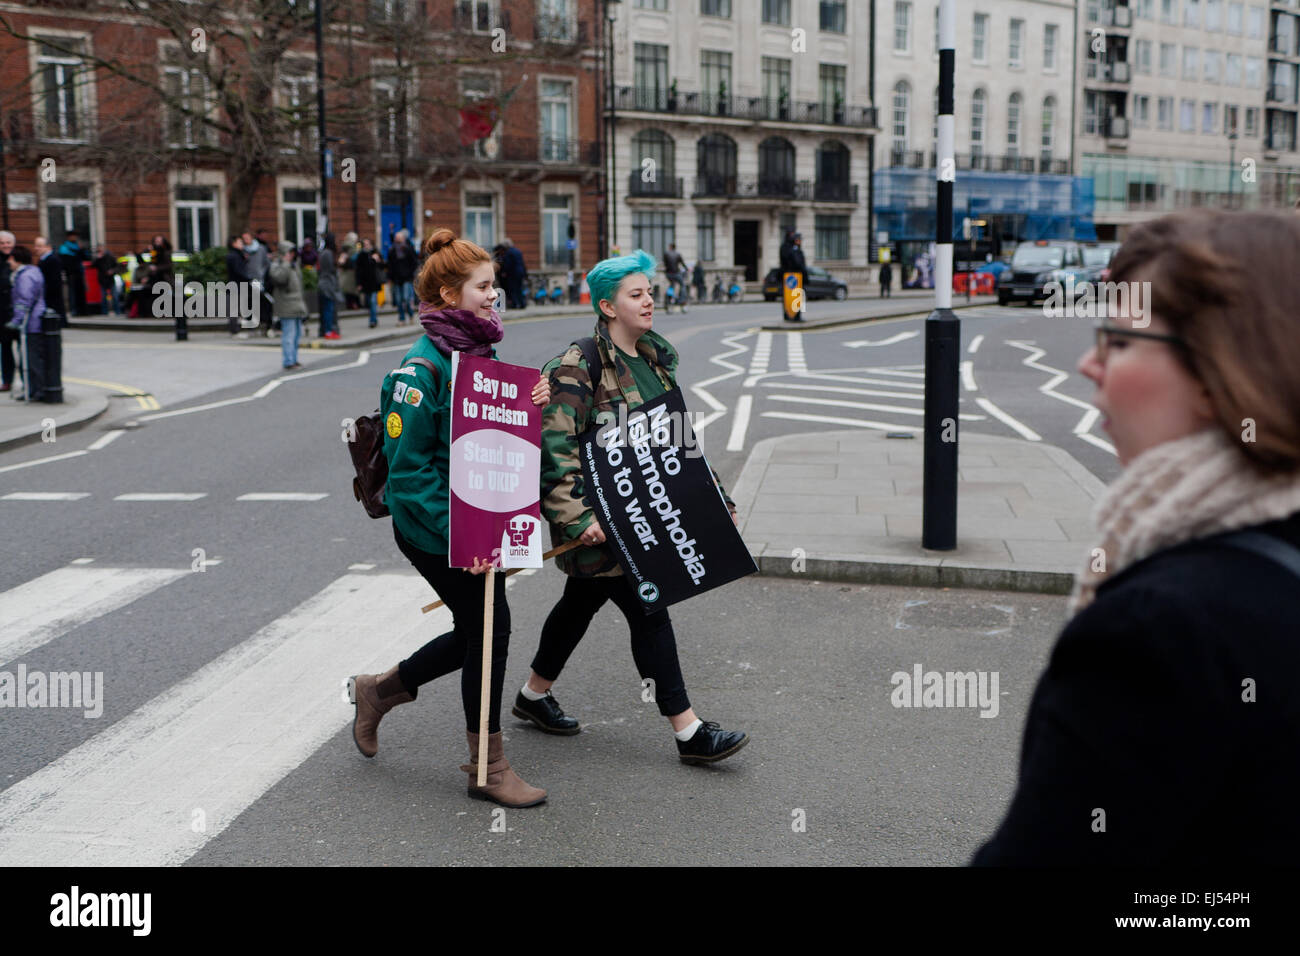 London, UK. 21. März 2015. Demonstranten unterhielten mit Plakat am Stand bis hin zu Rassismus und Faschismus Protest London, Credit: Peter Barbe/Alamy Live News Stockfoto